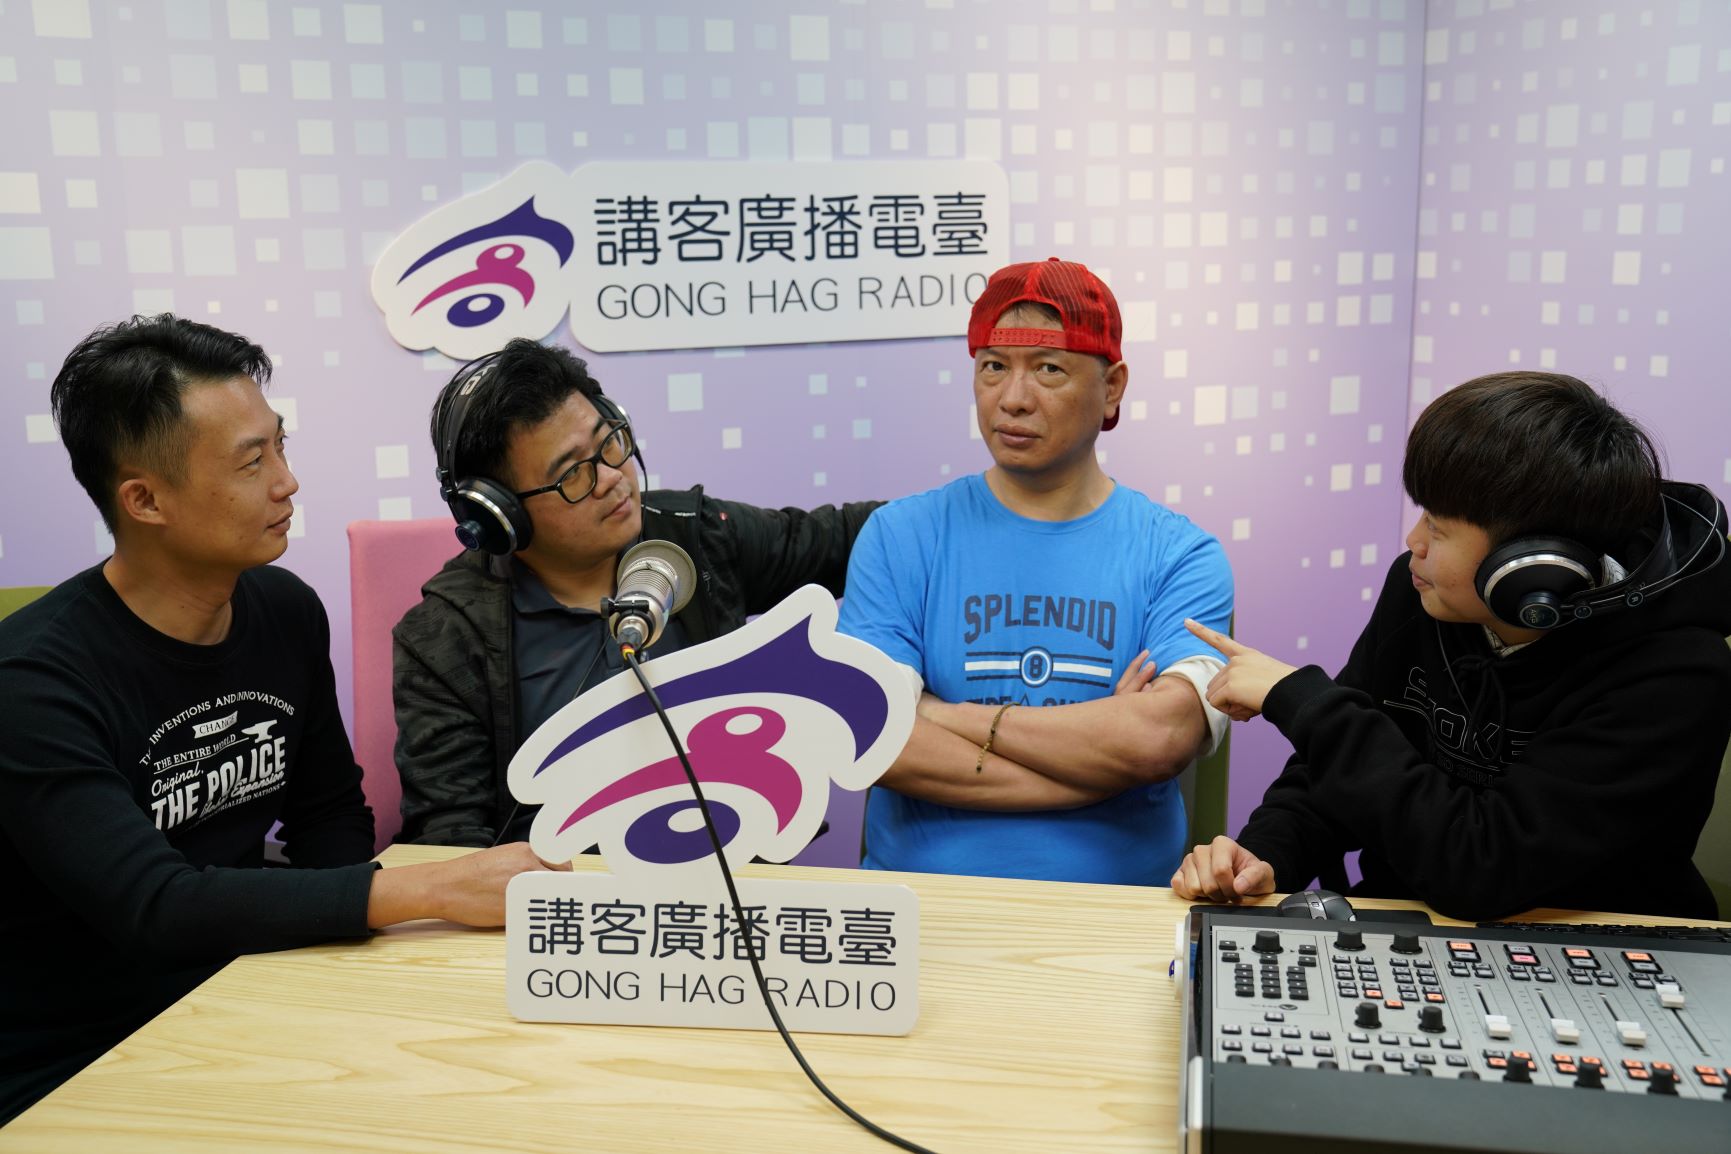 講客廣播電臺臺長徐智俊與客家後生主持人一起合影。